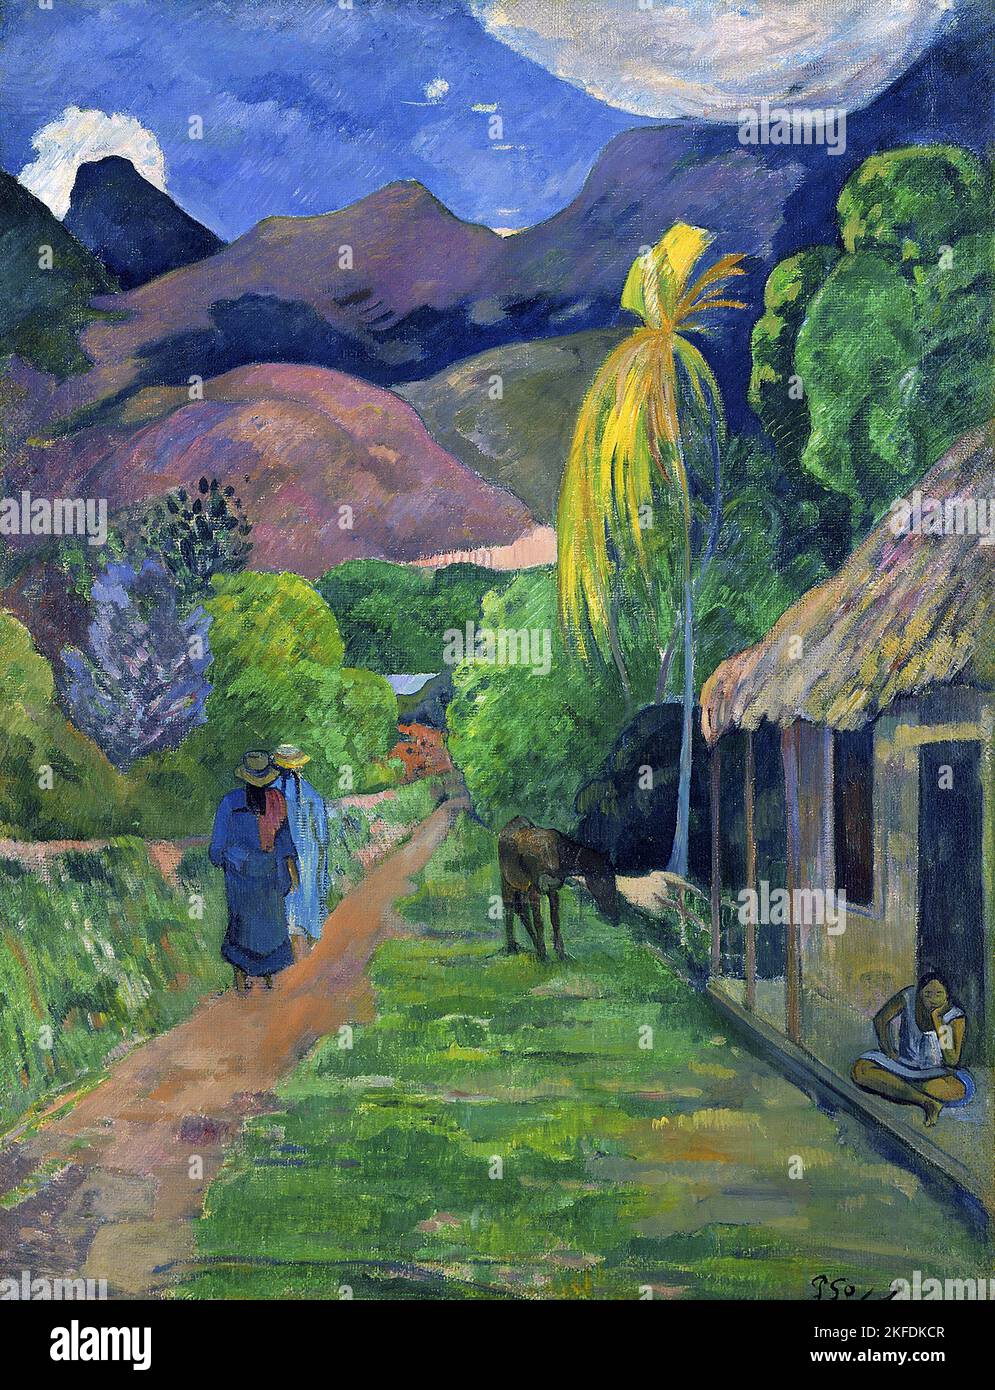 Tahití: 'Rue de Tahití' (calle en Tahití). Óleo sobre lienzo de Paul Gauguin (7 de junio de 1848 - 8 de mayo de 1903), 1891. Paul Gauguin nació en París en 1848 y pasó parte de su infancia en Perú. Trabajó como corredor de bolsa con poco éxito, y sufrió ataques de depresión severa. También pintó. En 1891, Gauguin, frustrado por la falta de reconocimiento en casa y financieramente indigente, navegó a los trópicos para escapar de la civilización europea y 'todo lo que es artificial y convencional'. Su tiempo allí fue objeto de mucho interés tanto entonces como en los tiempos modernos. Foto de stock